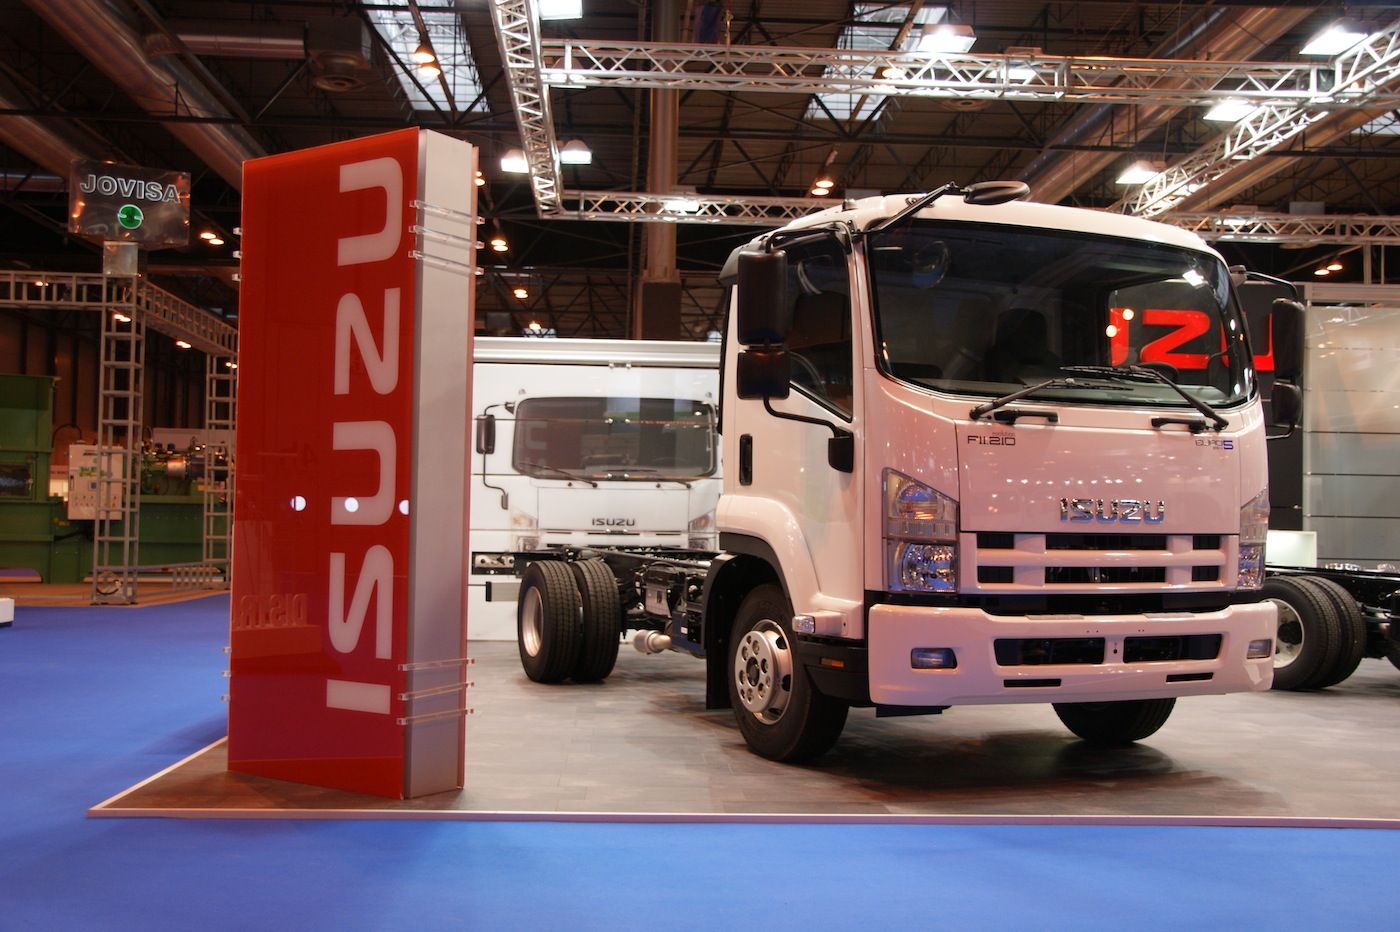 Isuzu presentó su serie F de camiones en TECMA, en Ifema - Madrid